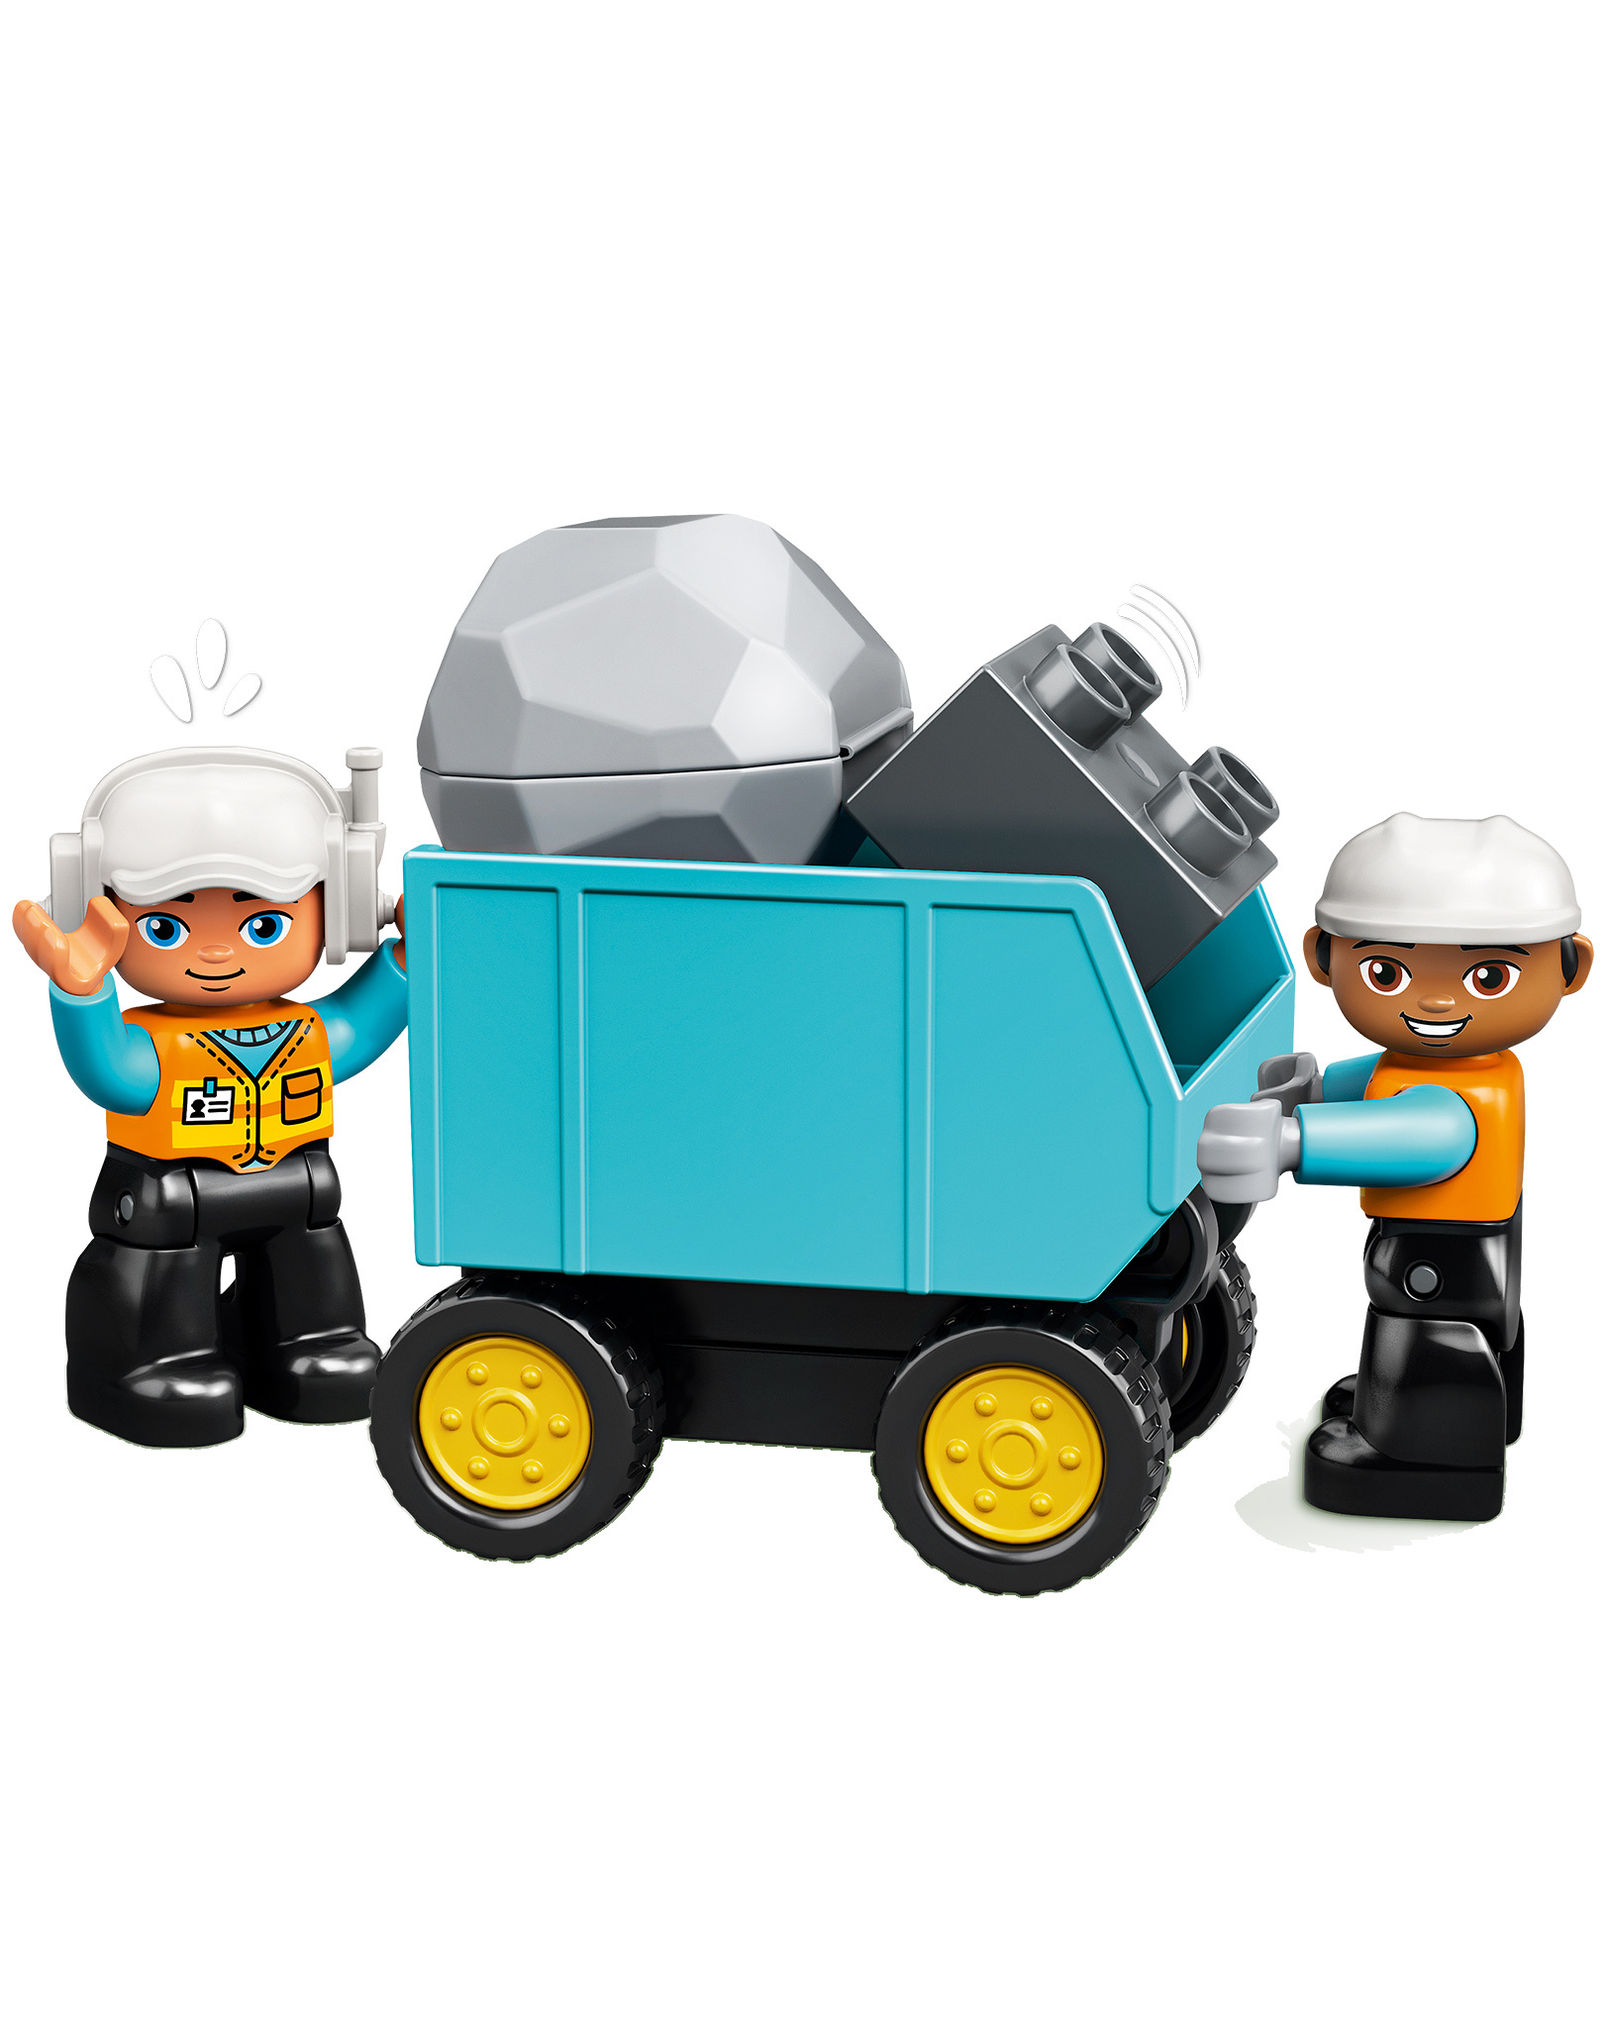 LEGO® DUPLO® 10931 Bagger und Laster bestellen | Weltbild.at